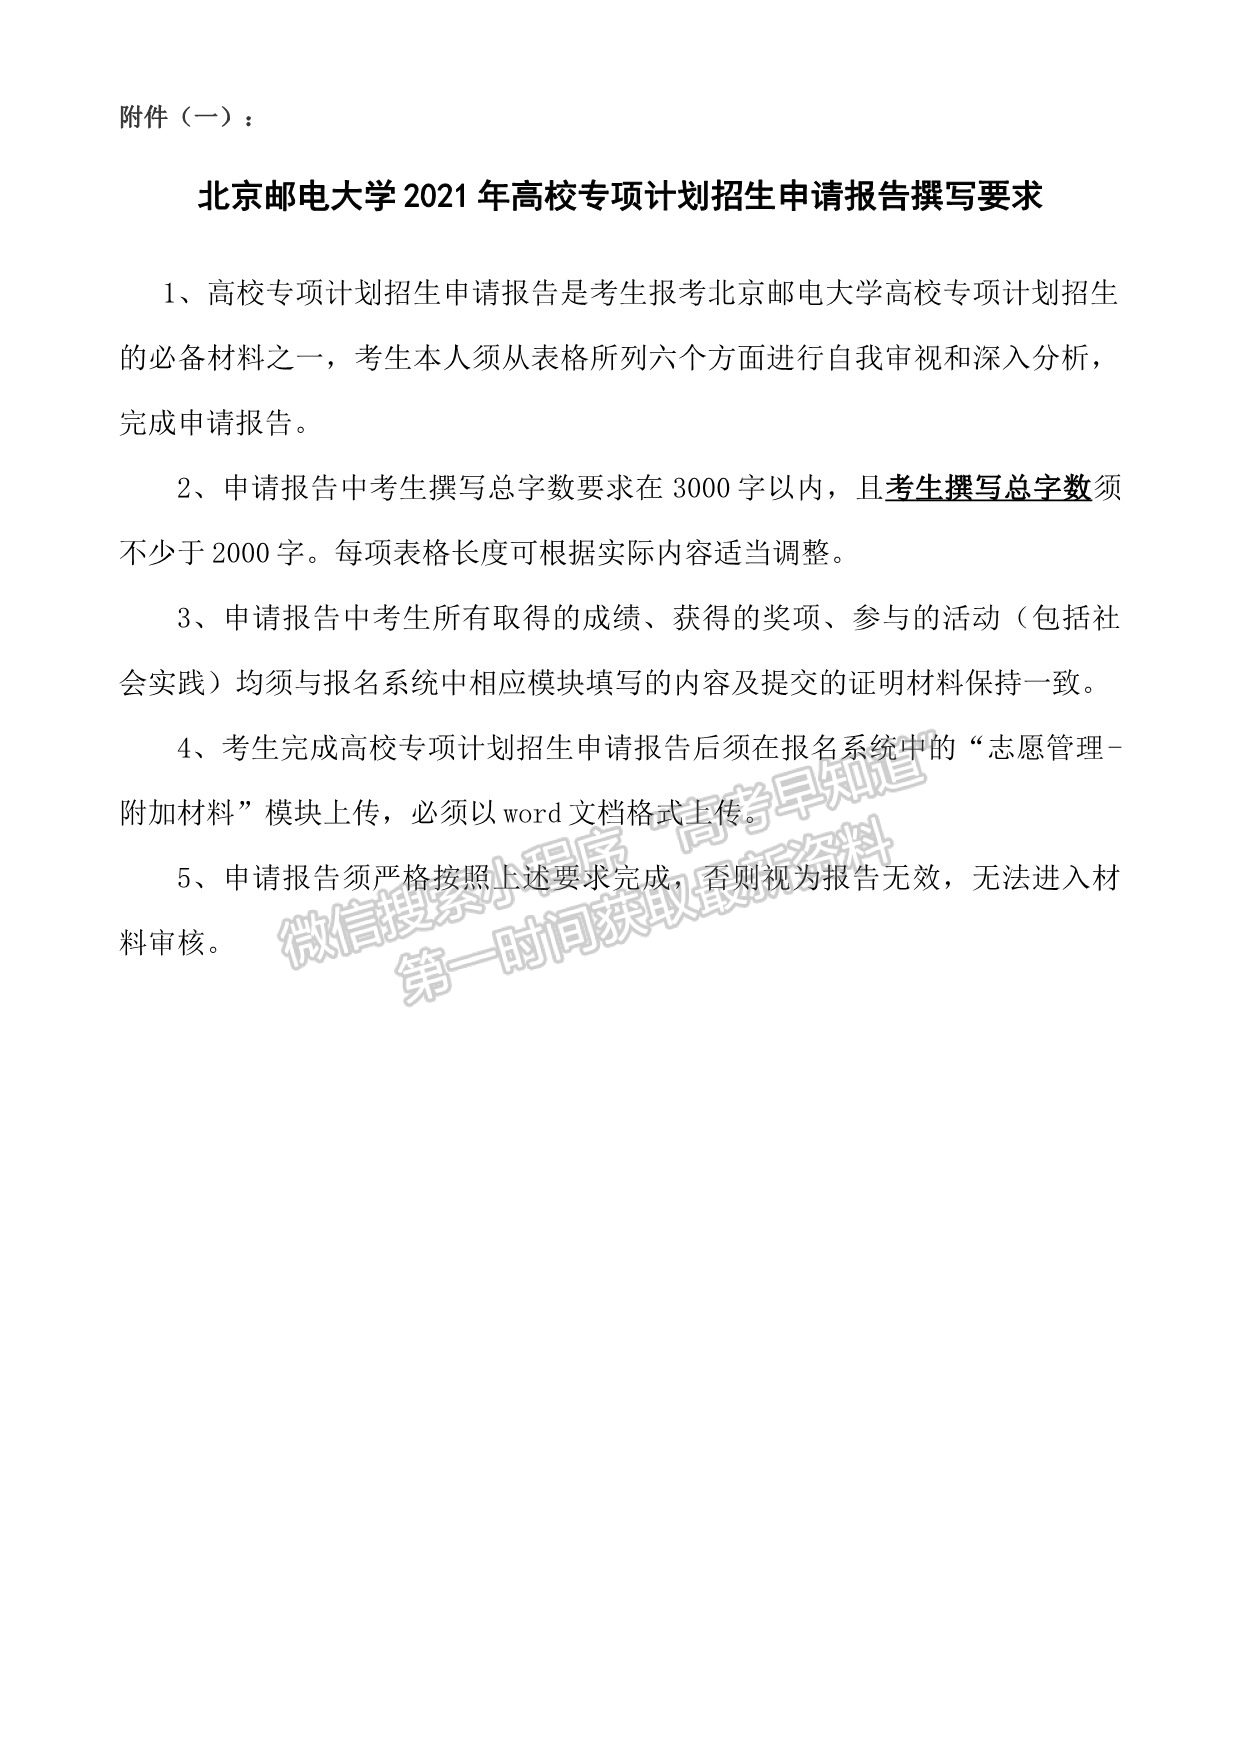 北京邮电大学2021年高校专项计划招生简章